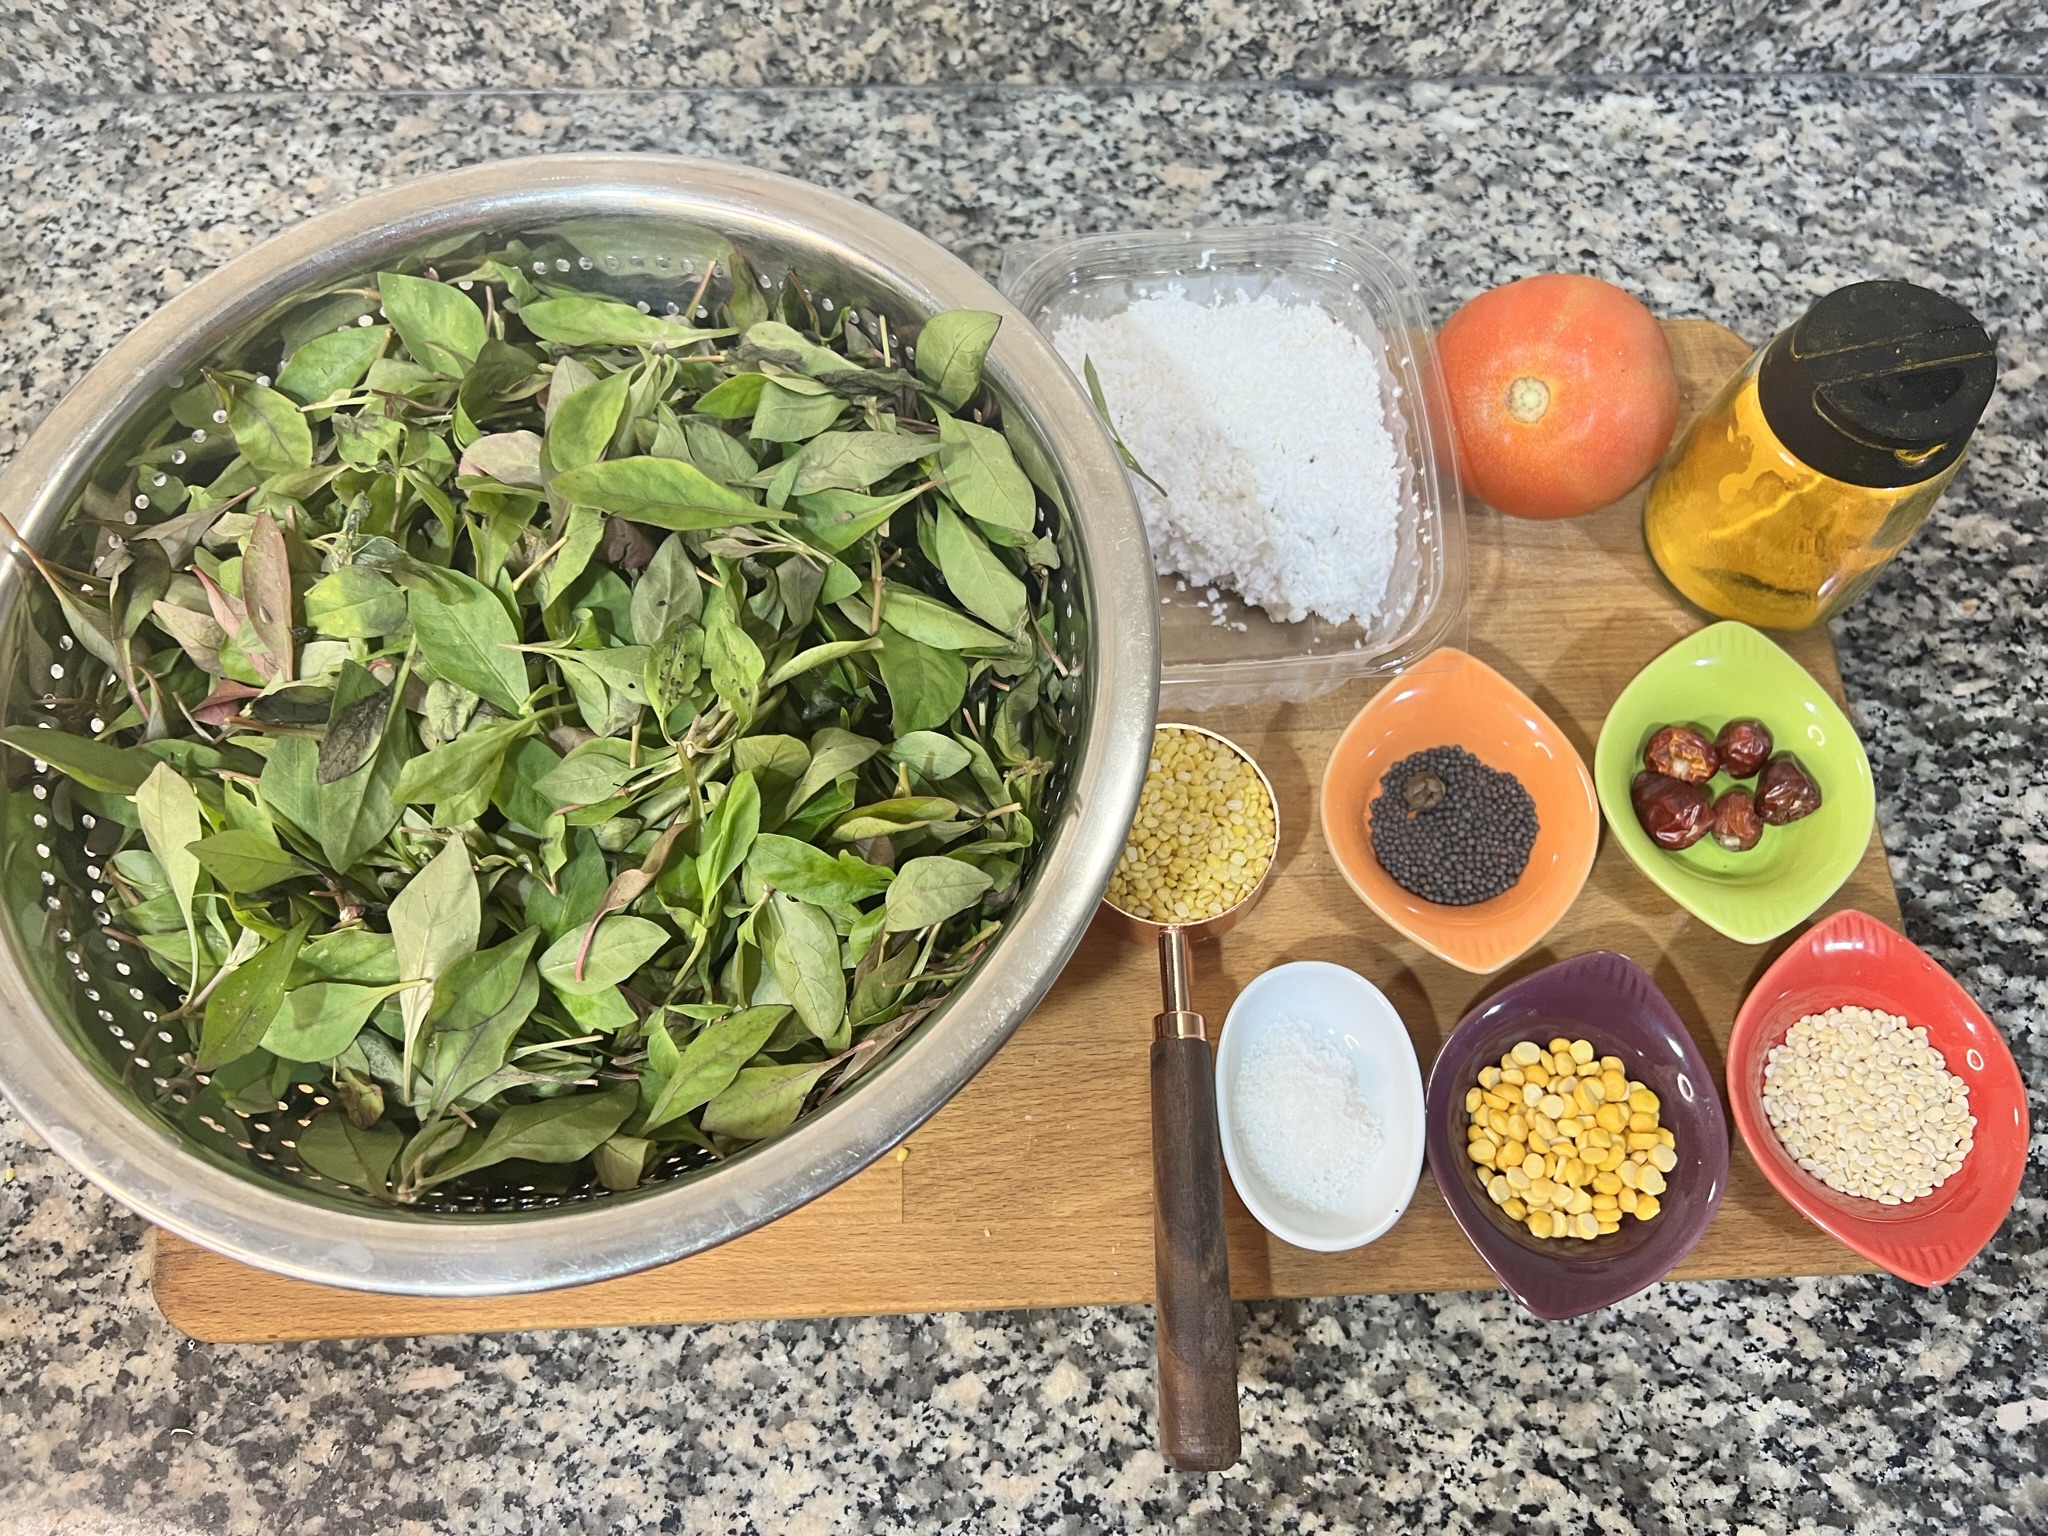 Ingredients for Ponnaganti Koora stir-fry